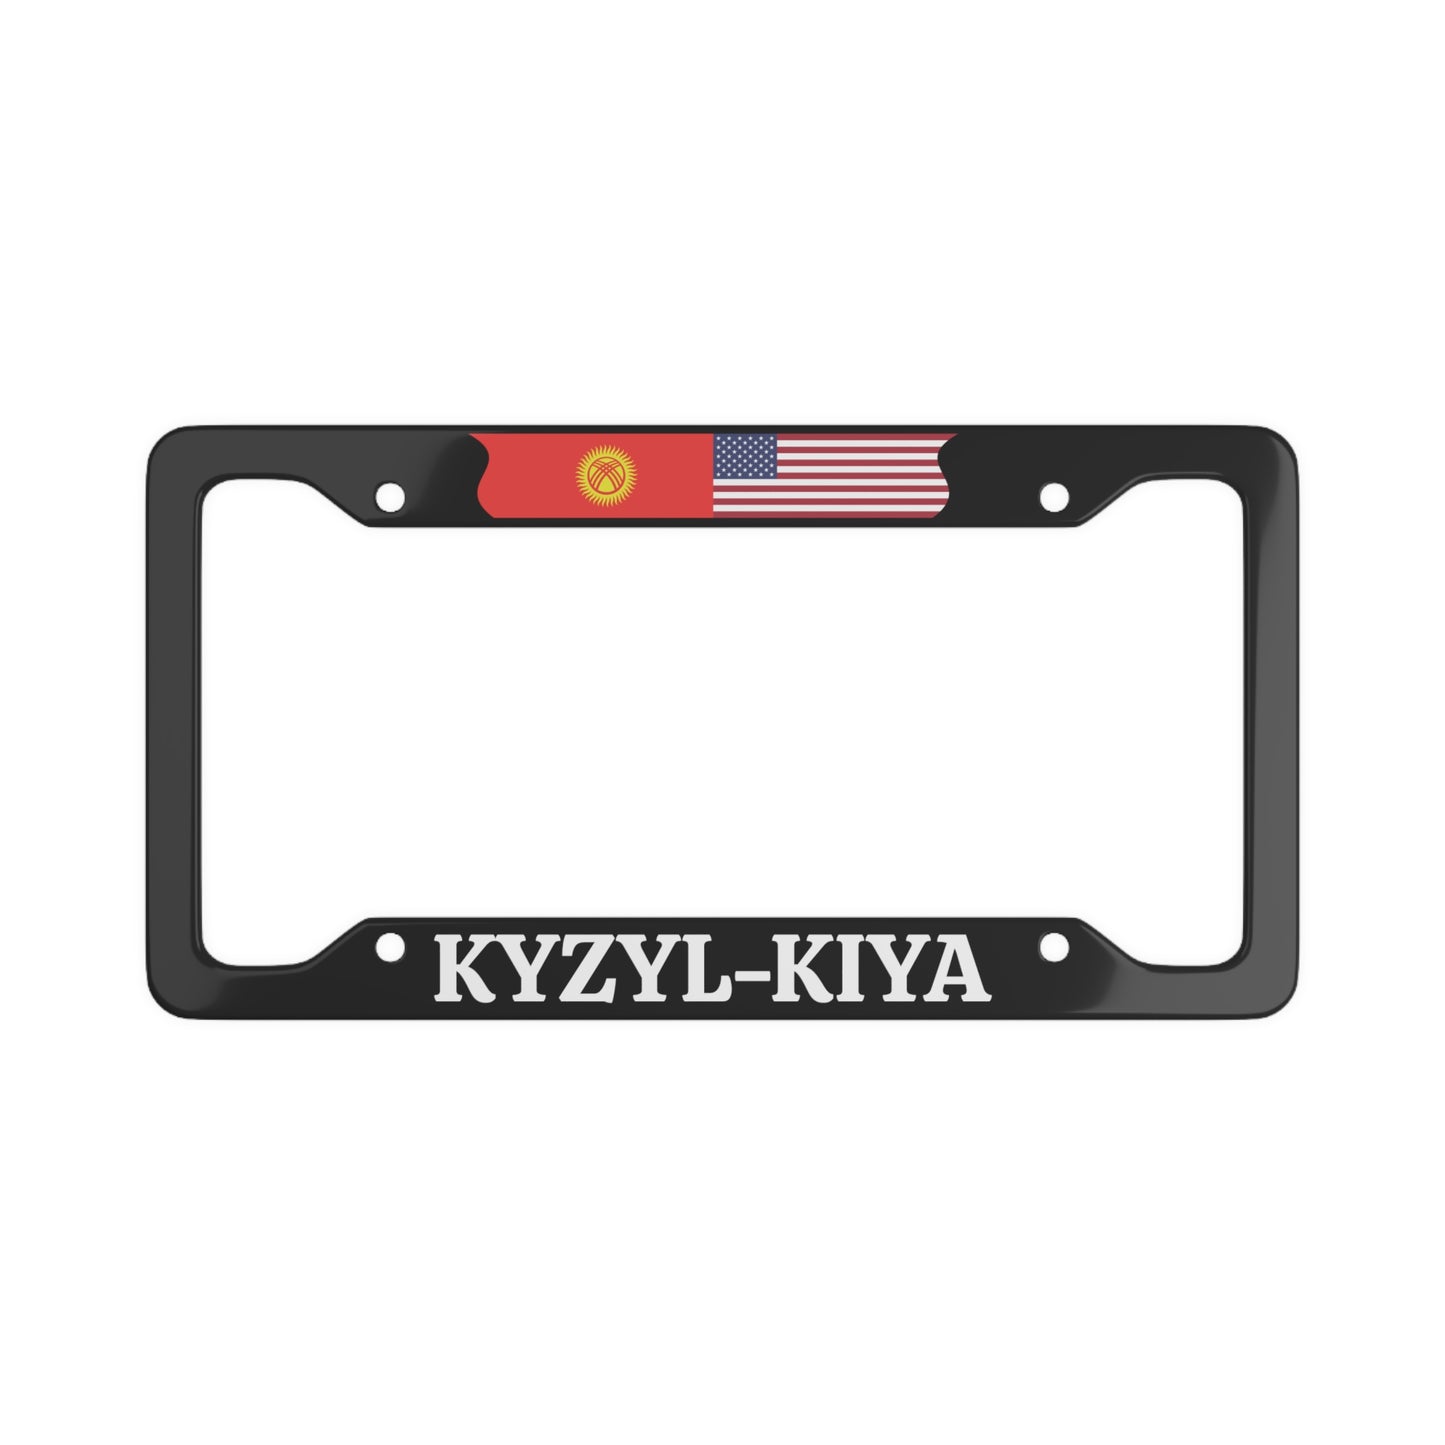 KYZYL-KIYA Kyrgyzstan with flag License Plate Frame